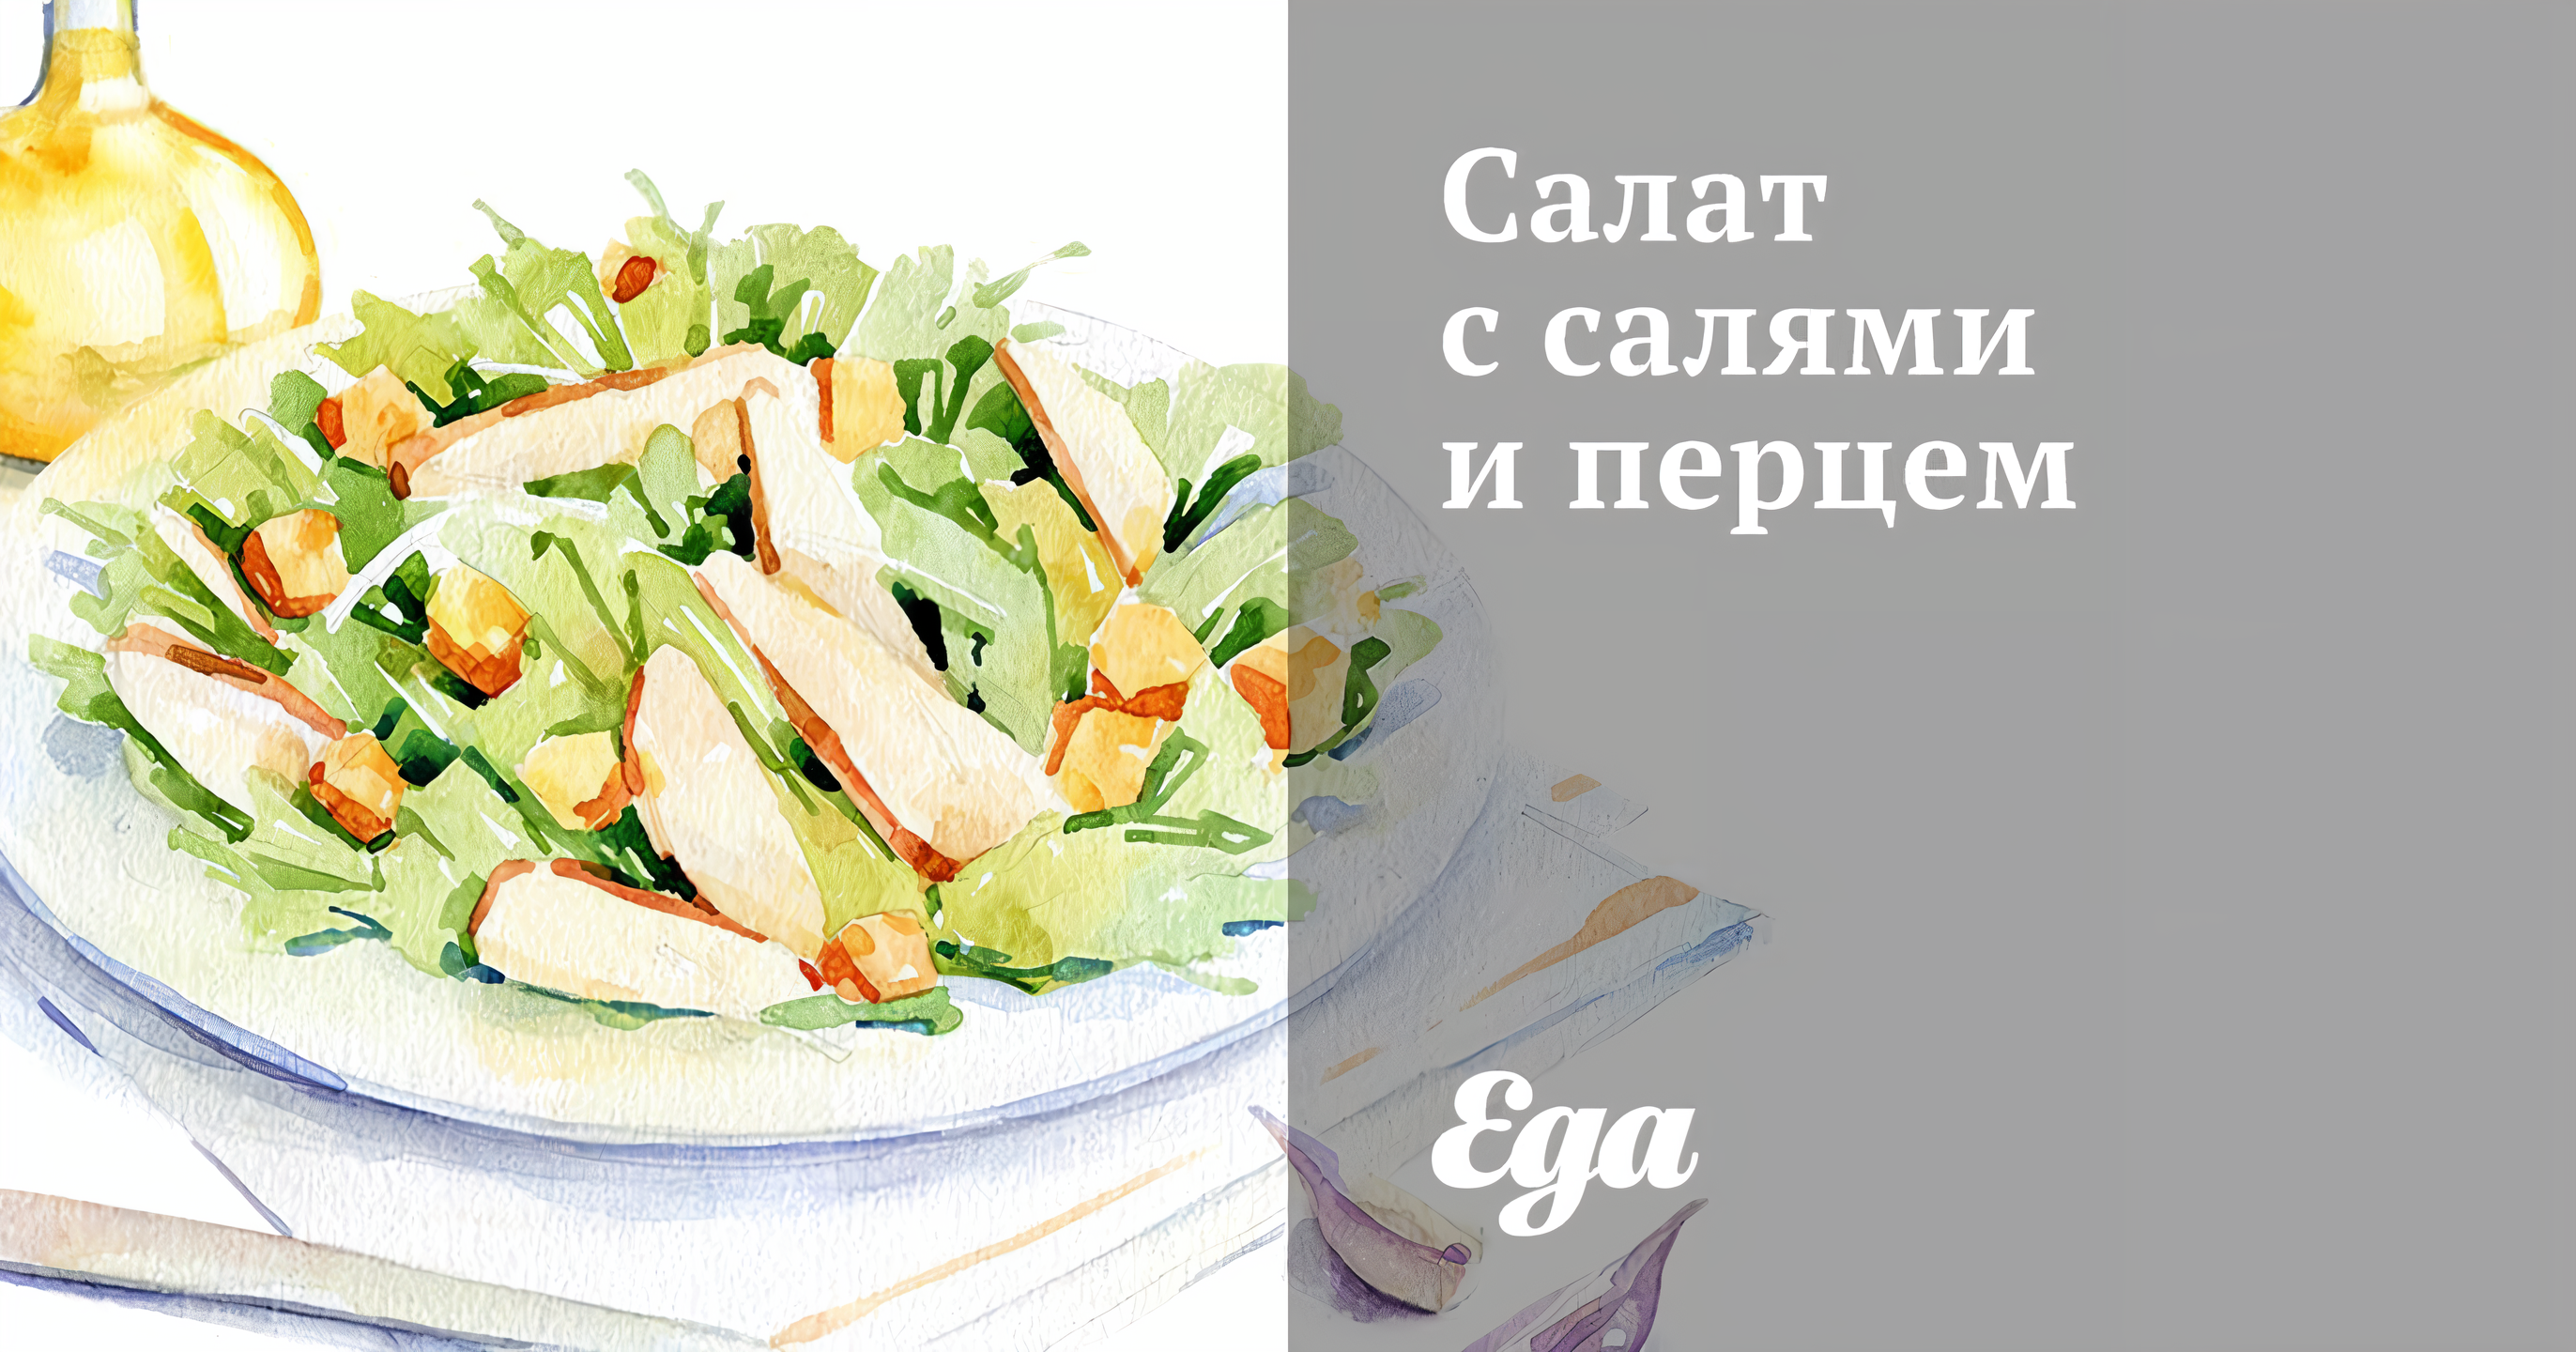 Вкусный Рецепт: Салат с салями